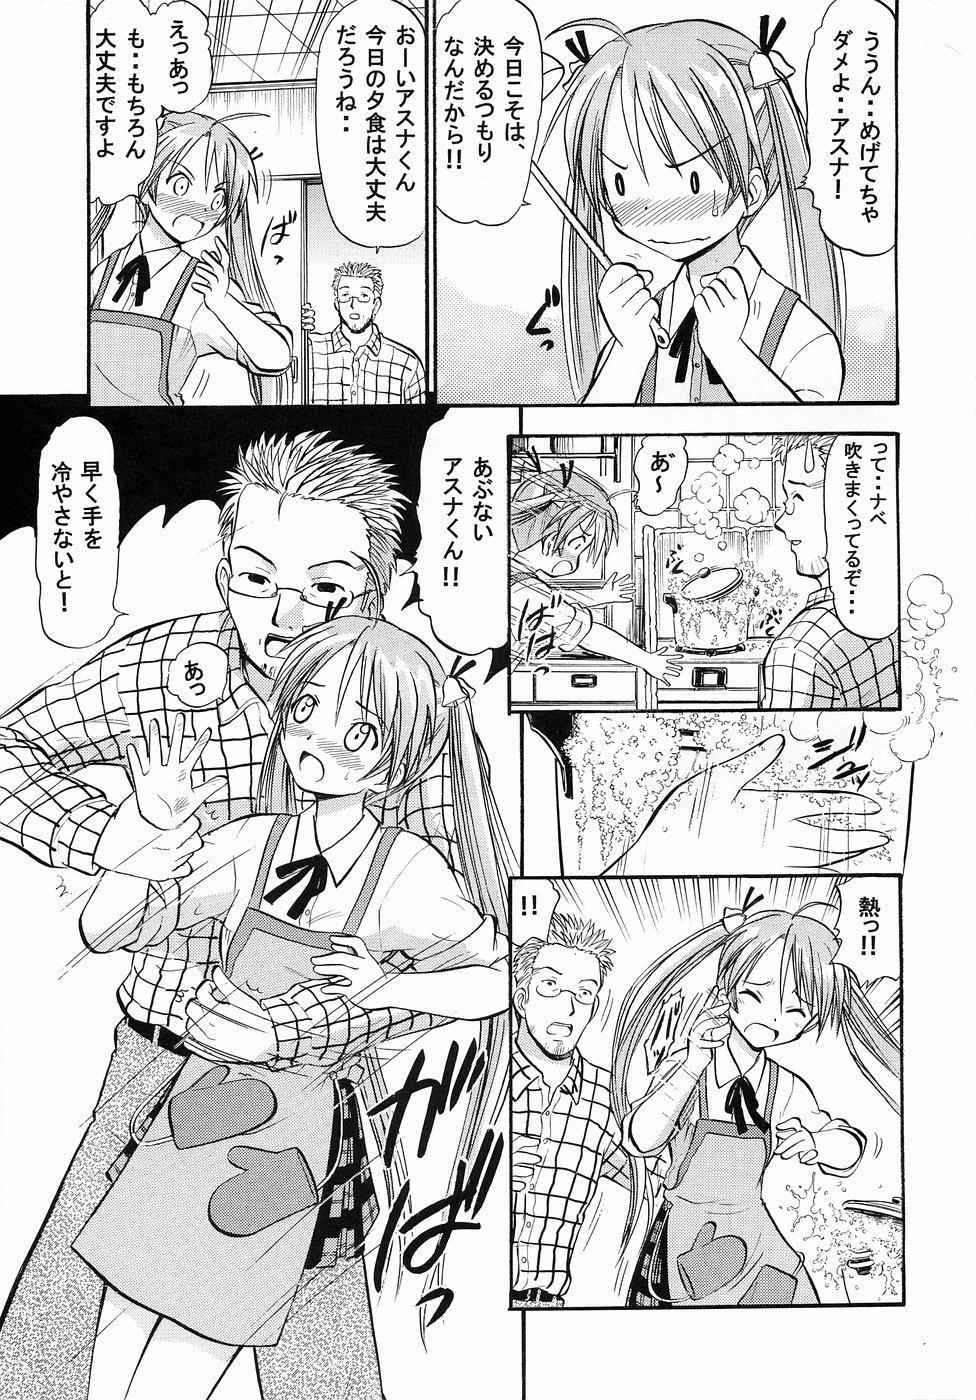 Hot Asuna no Koi Suru Heart - Mahou sensei negima Str8 - Page 4